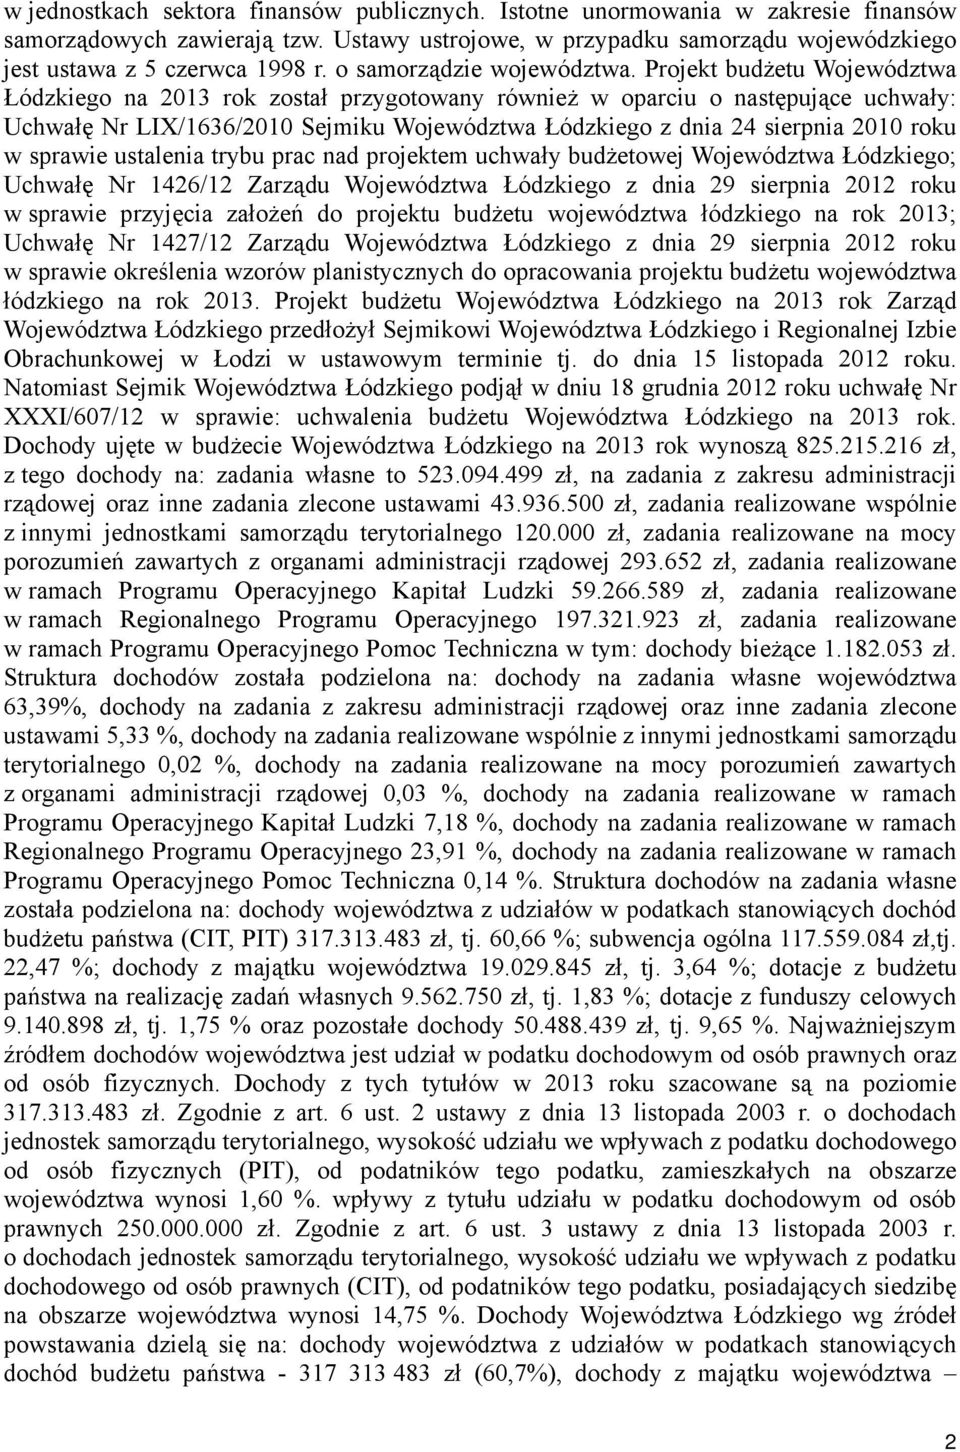 Projekt budżetu Województwa Łódzkiego na 2013 rok został przygotowany również w oparciu o następujące uchwały: Uchwałę Nr LIX/1636/2010 Sejmiku Województwa Łódzkiego z dnia 24 sierpnia 2010 roku w